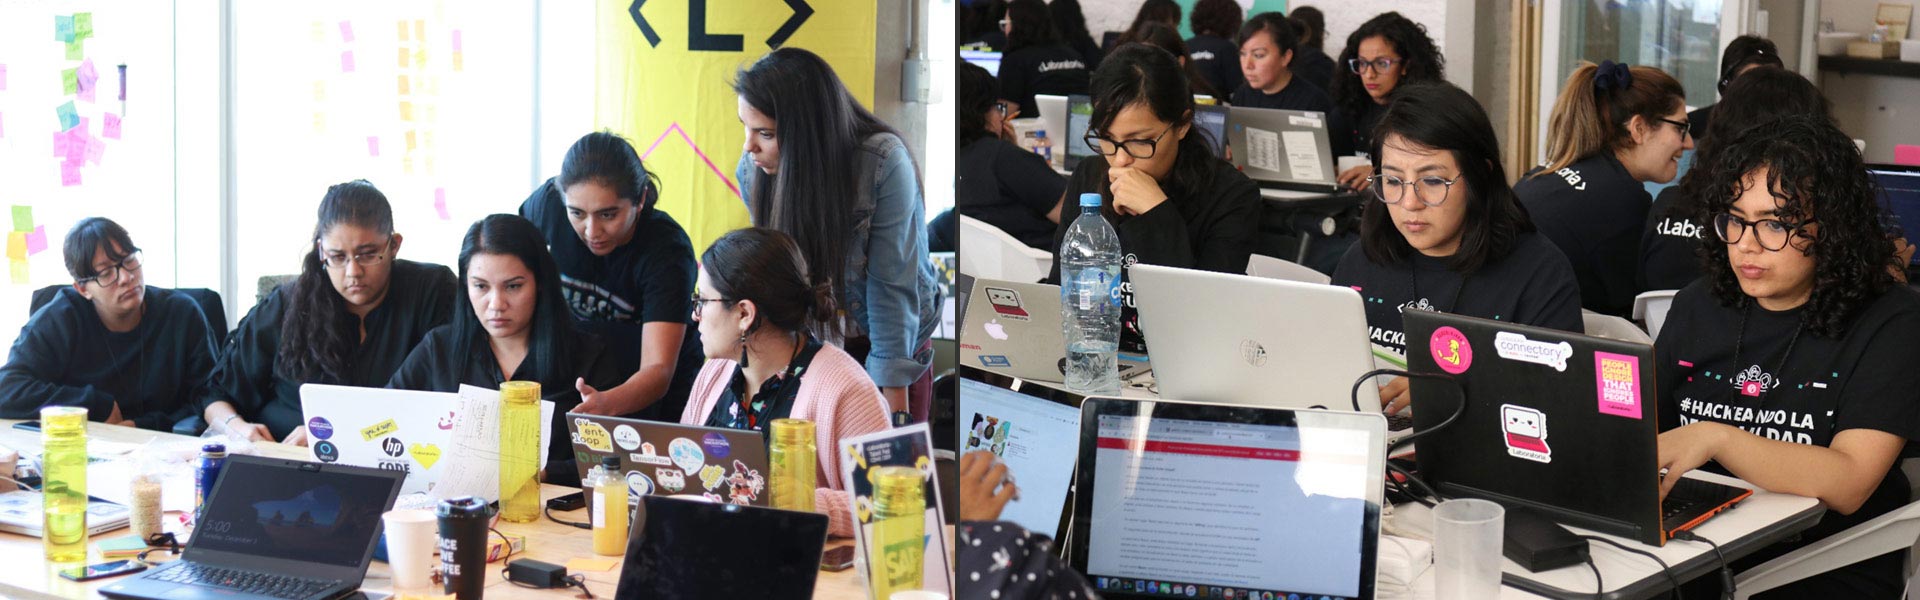 Wie Laboratoria mexikanische Frauen bei der Jobsuche in der Technologiebranche unterstützt